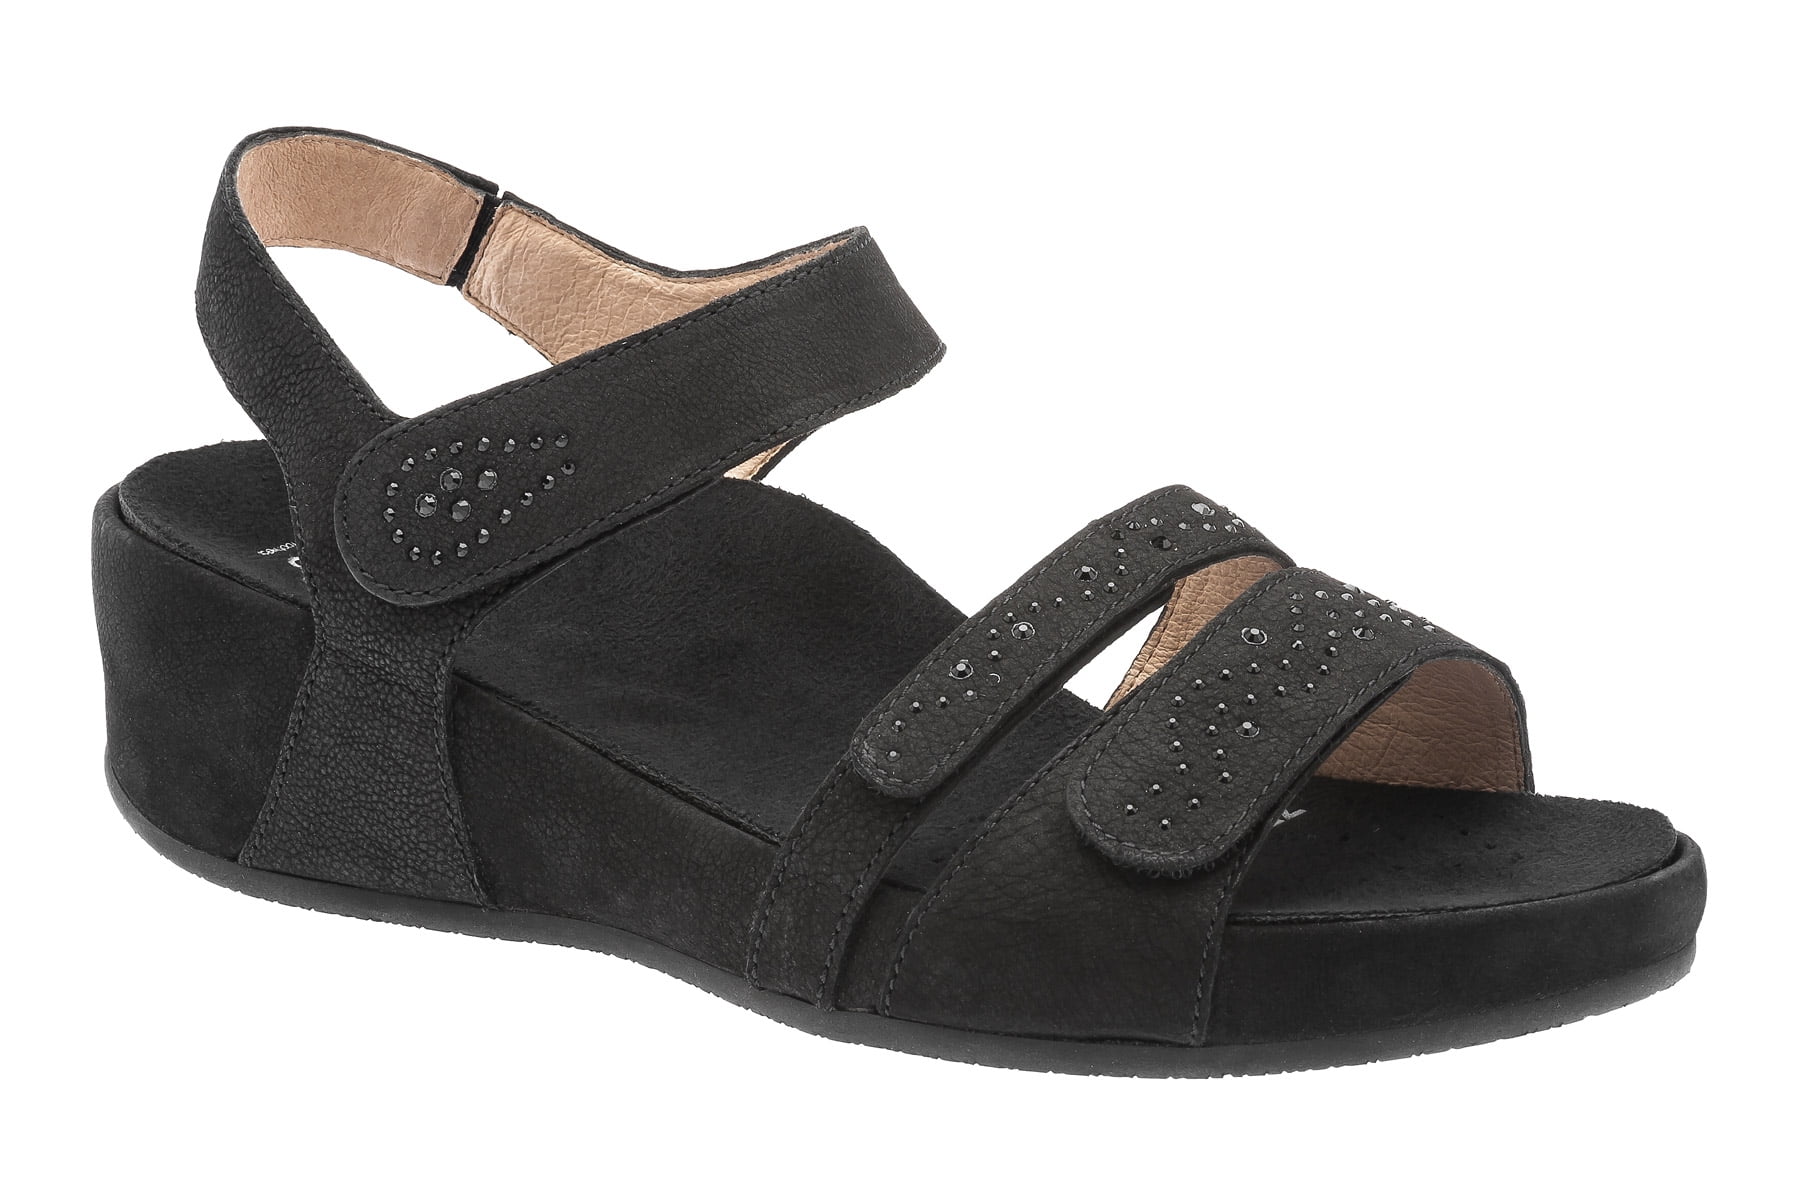 ABEO Gabrielle - Wedge Sandals in Black - Walmart.com